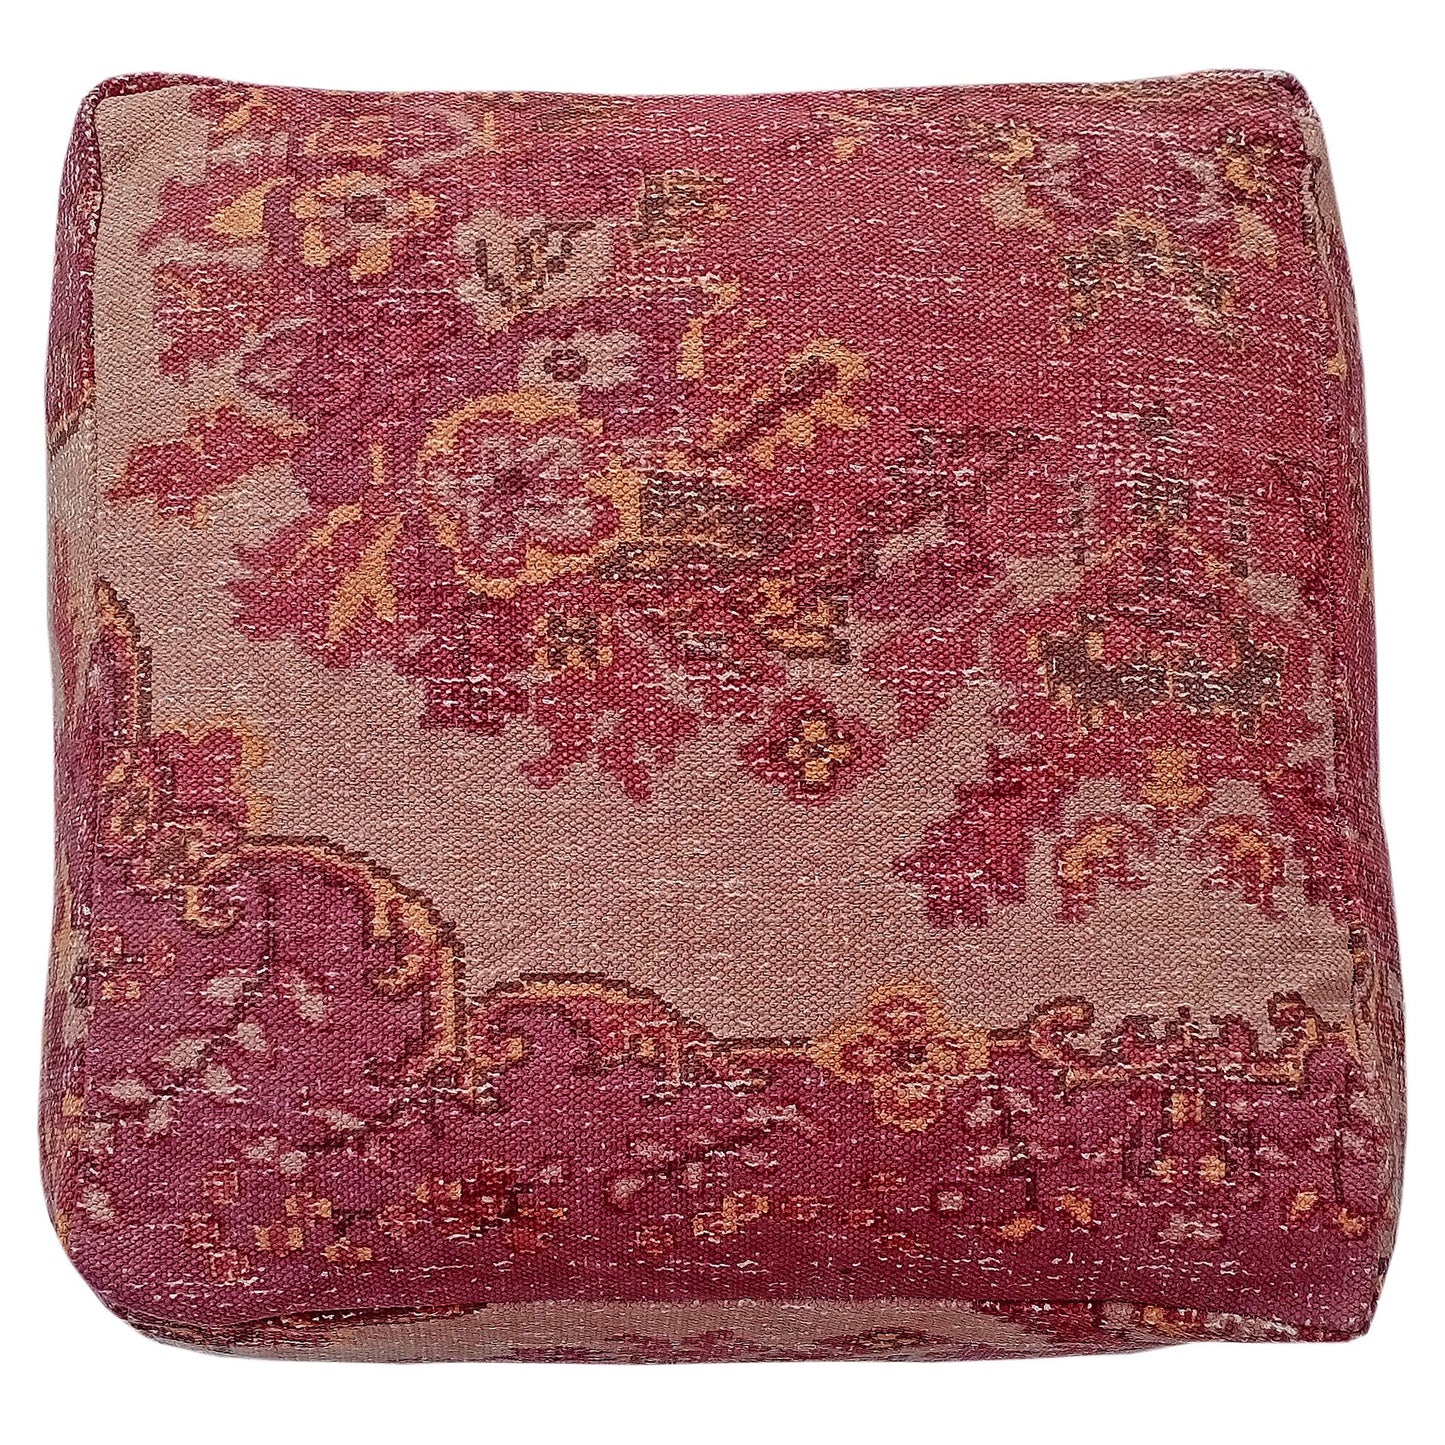 Mesmer red Ottoman / bean bag - The Teal Thread